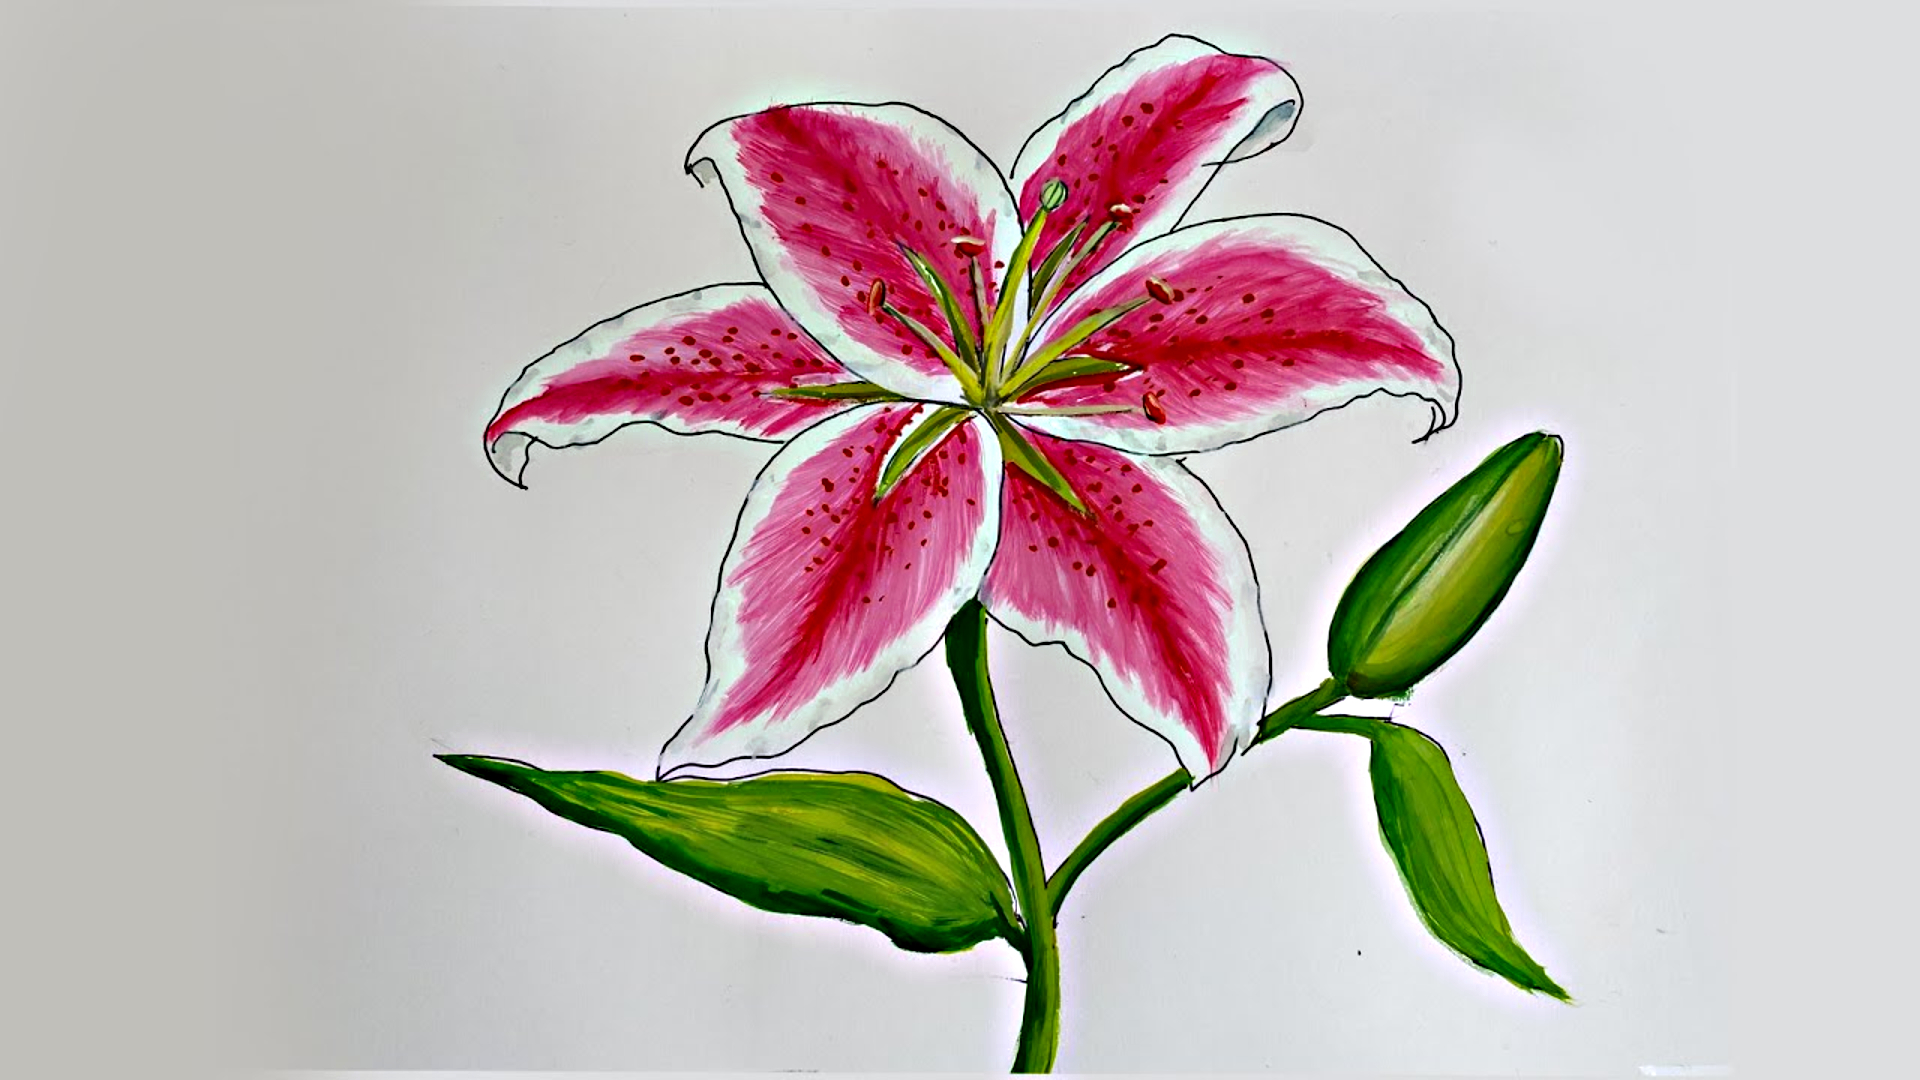 Vẽ hoa Ly: Cùng khám phá thế giới của nghệ thuật vẽ hoa Ly thật độc đáo và quyến rũ. Bức tranh sẽ làm bạn say đắm vào cảm giác mộc mạc, tự nhiên của loài hoa này.